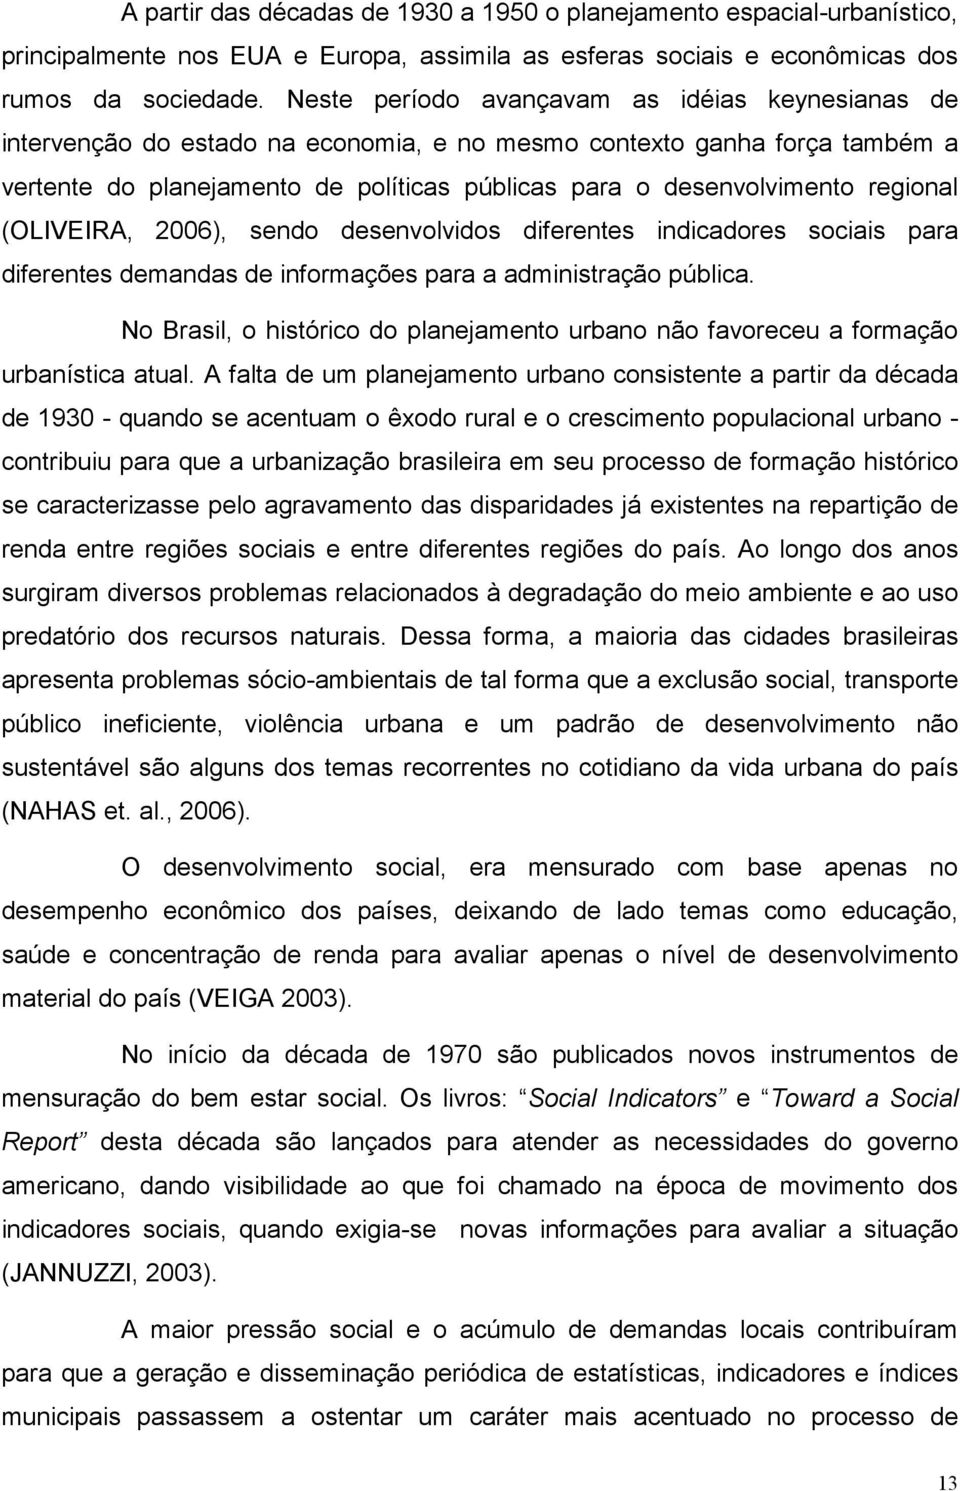 regional (OLIVEIRA, 2006), sendo desenvolvidos diferentes indicadores sociais para diferentes demandas de informações para a administração pública.